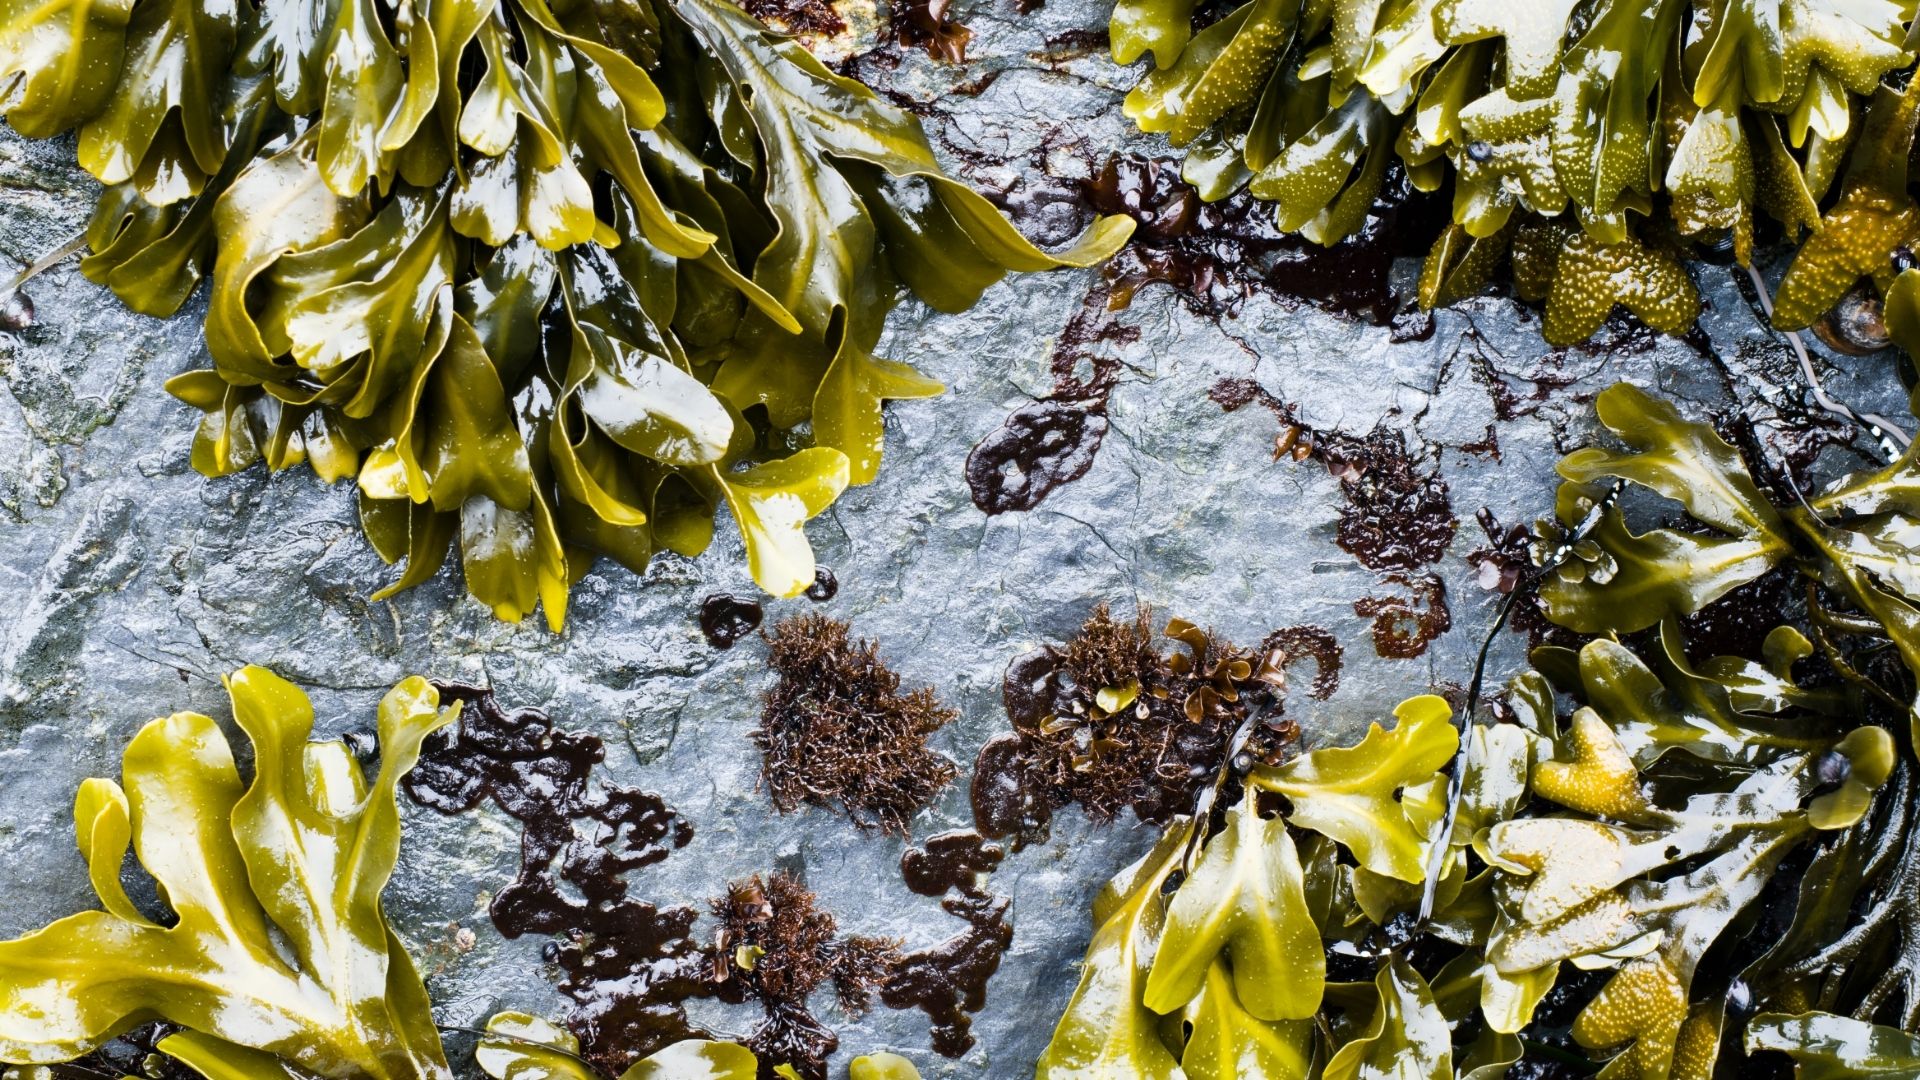 【海外で利用されてきた海藻】ヒバマタについて